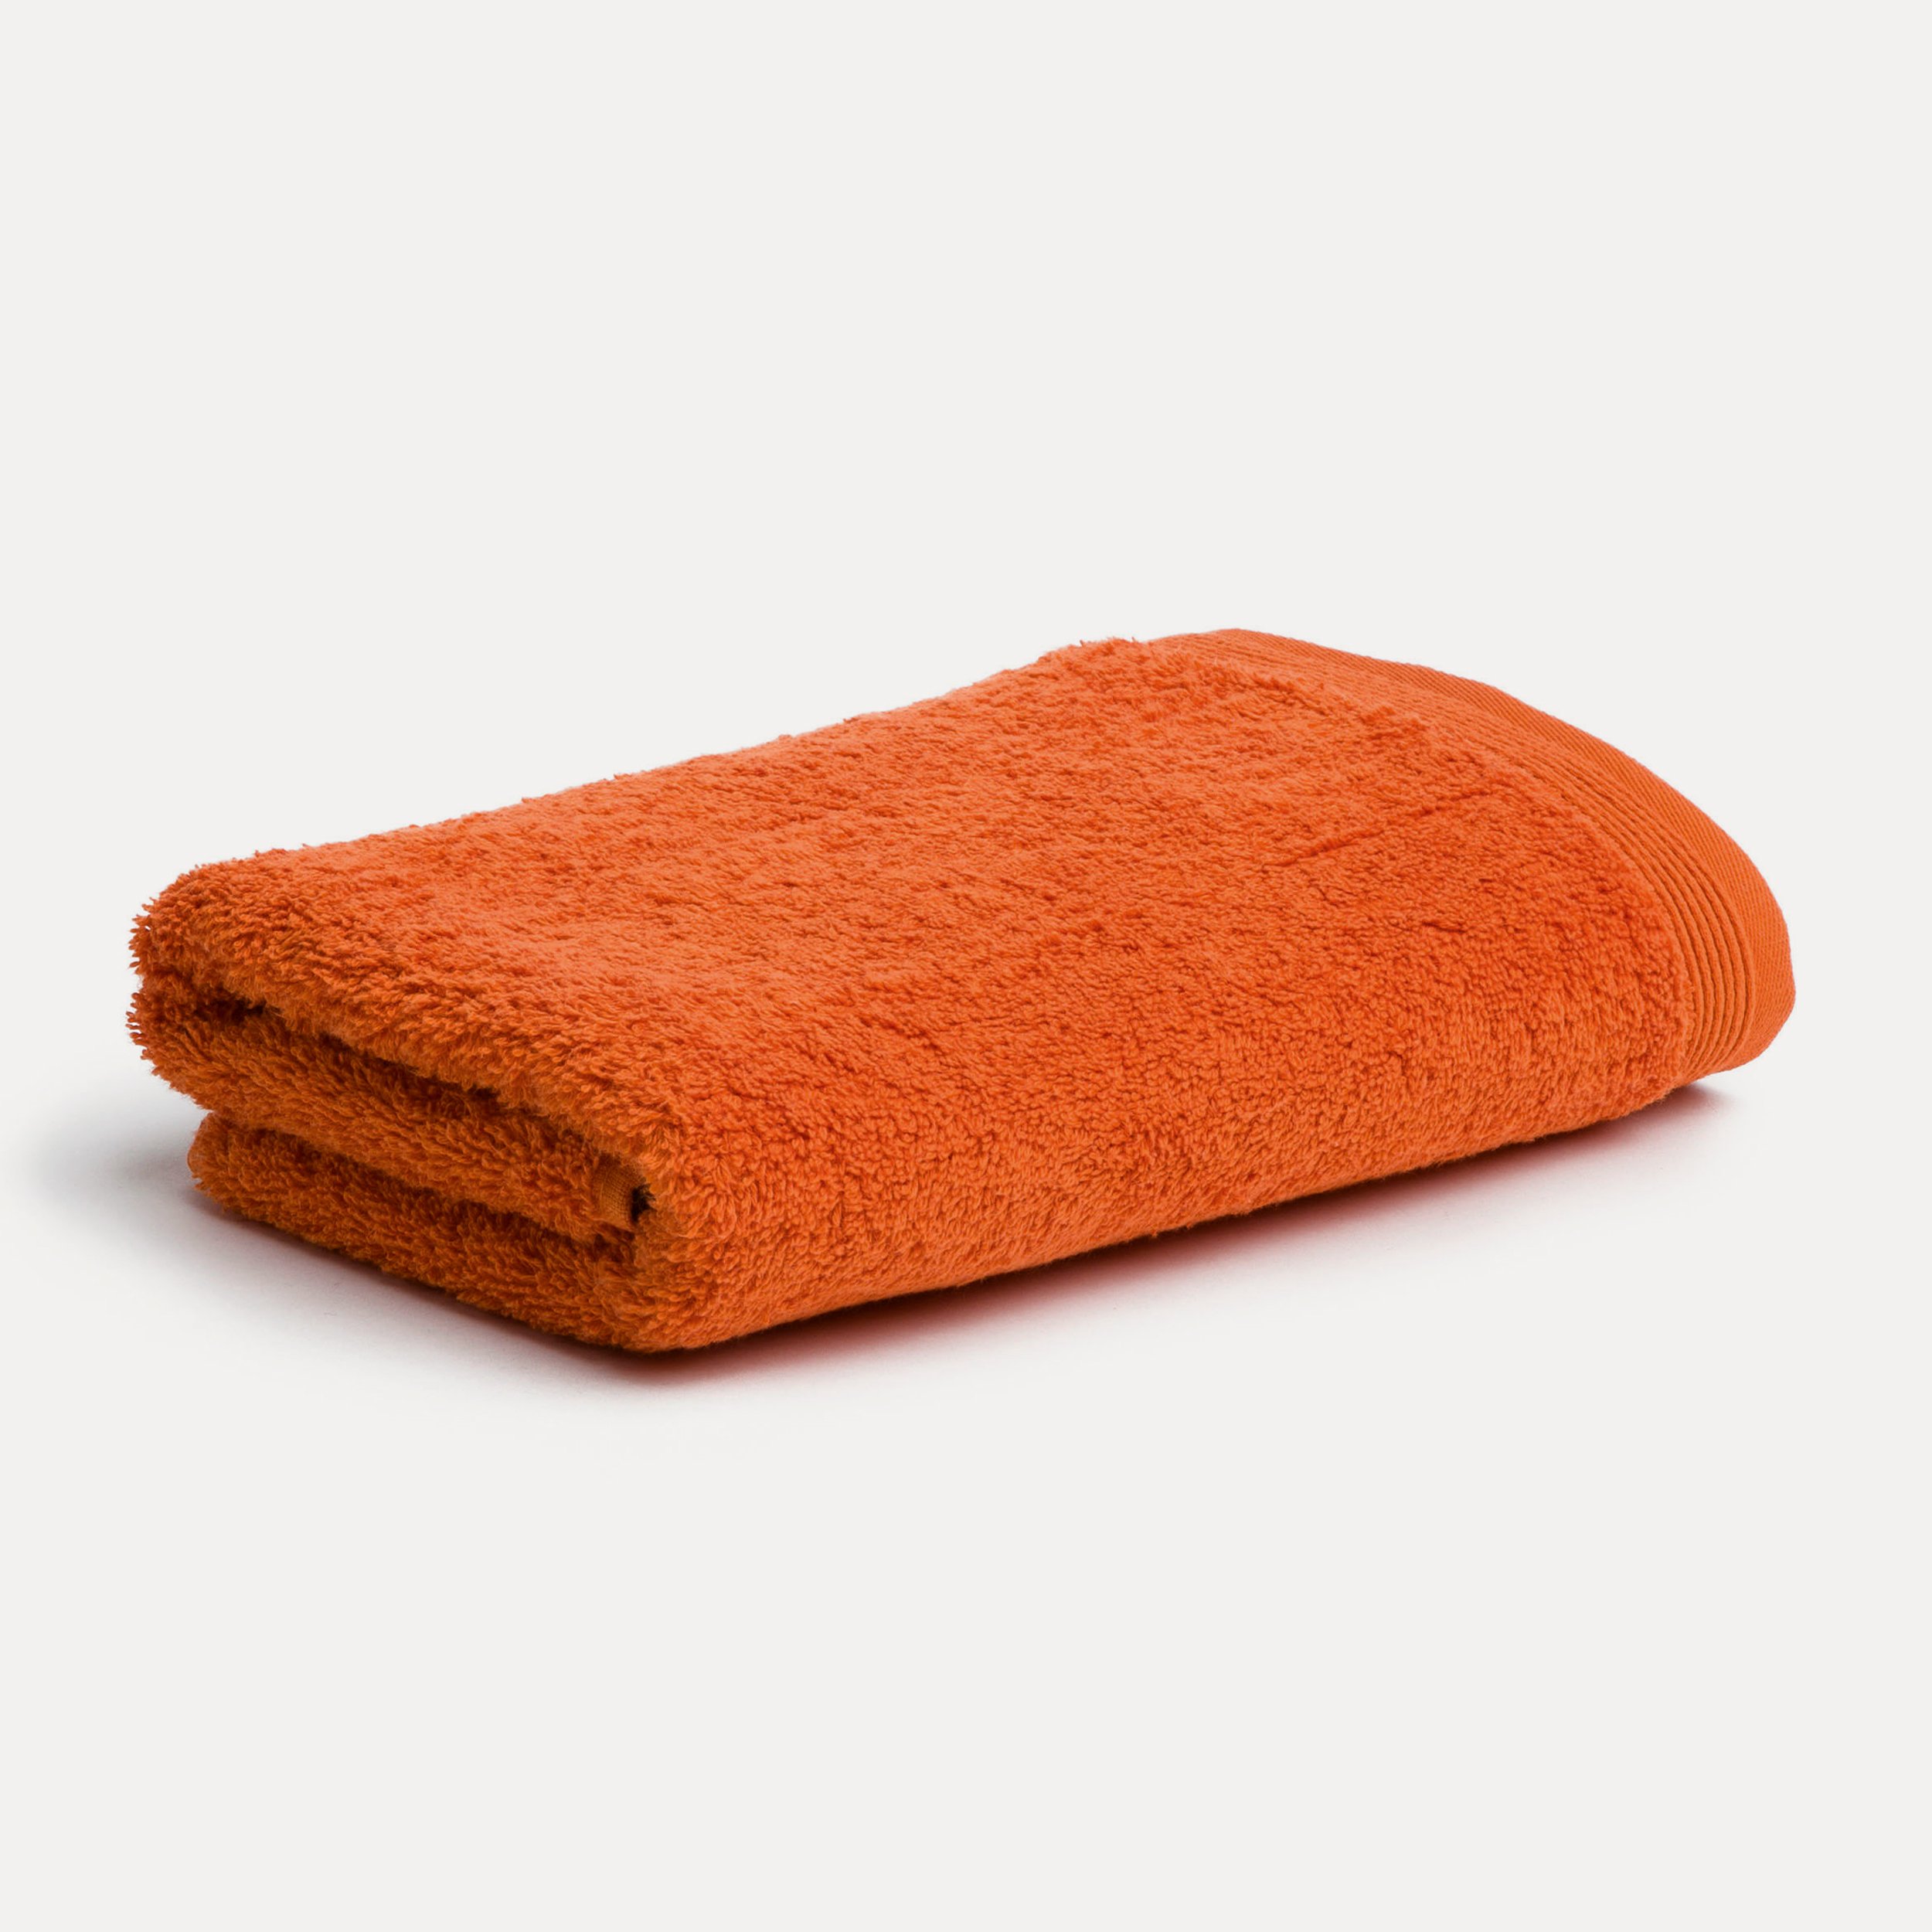 Handtuch clay)| MÖVE cm 50X100 Orange MÖVE Superwuschel (red